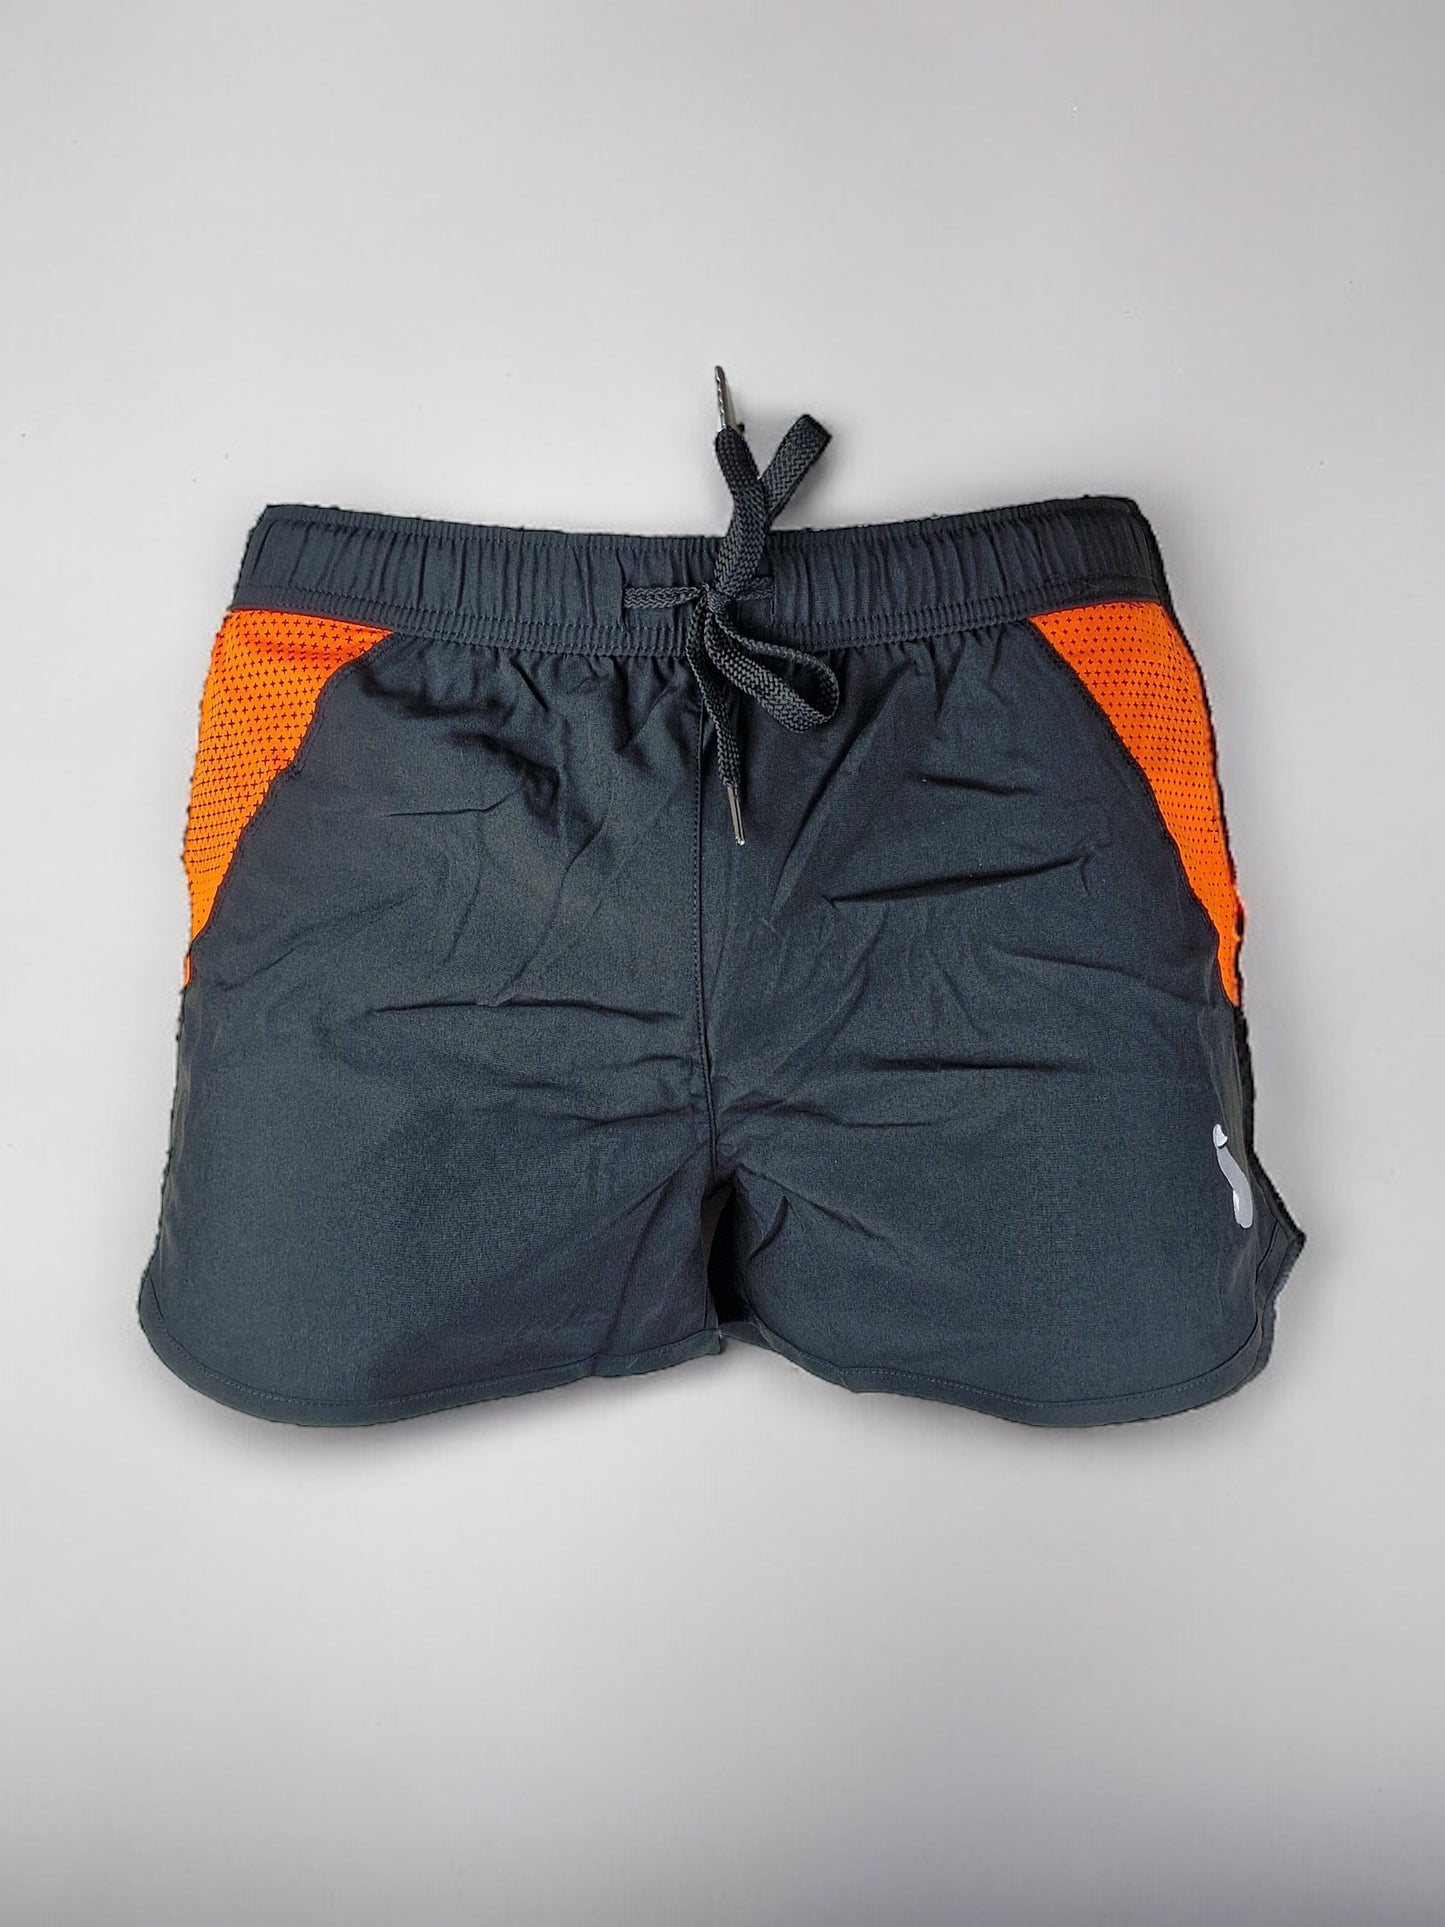 Training shorts / swimming shorts for men or unisex - Black/Orange